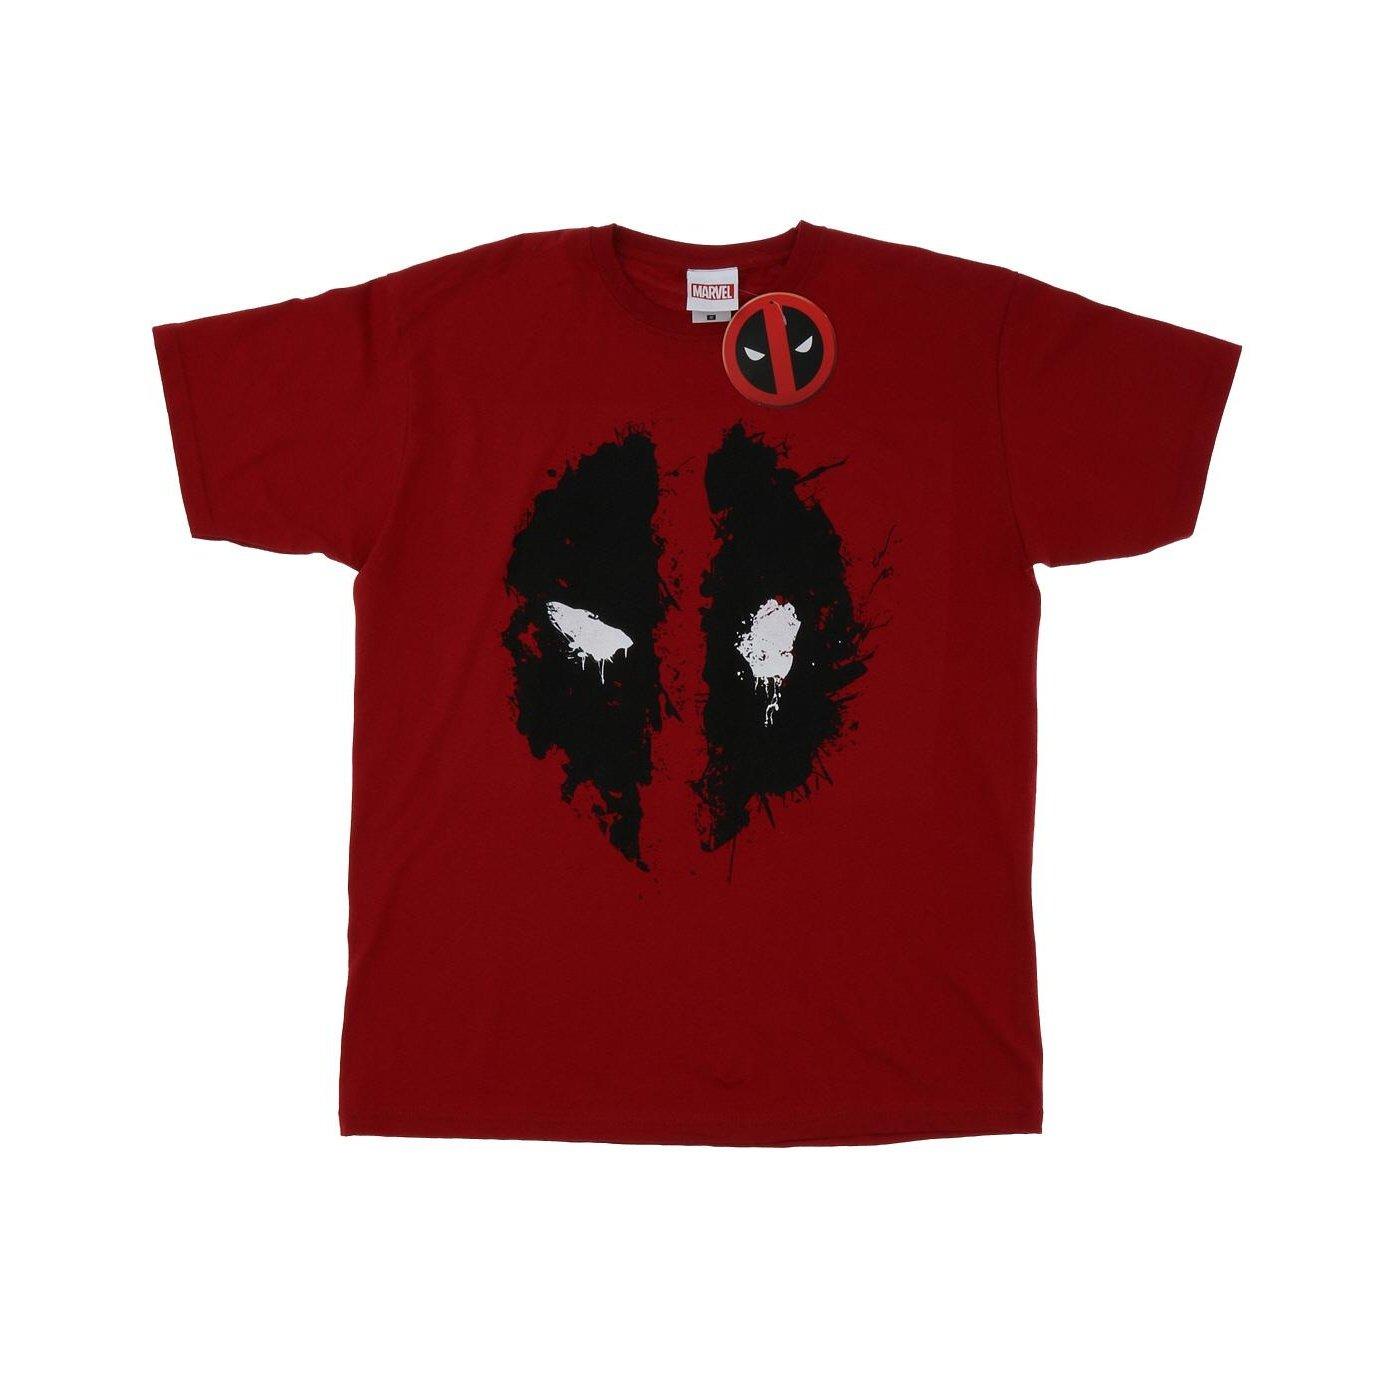 Tshirt Herren Rot Bunt 3XL von Deadpool